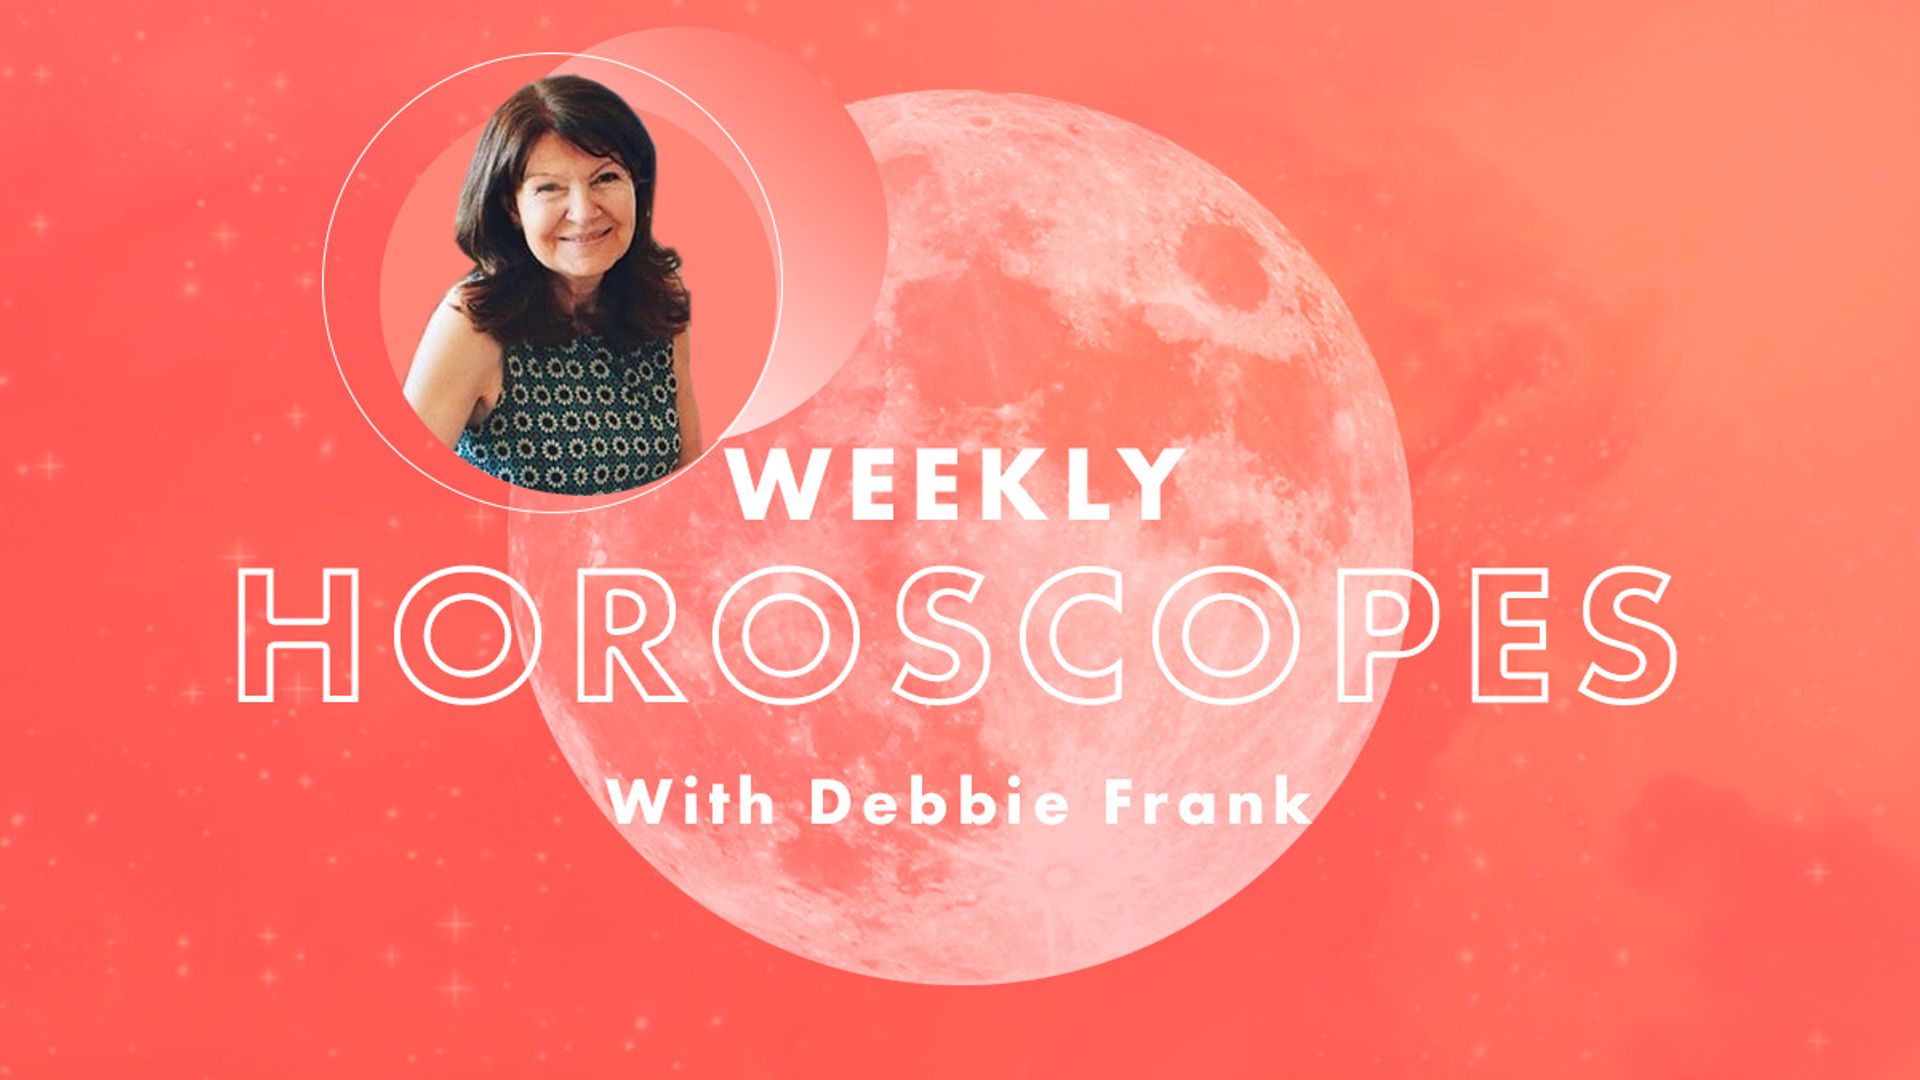 debbie frank weekly horoscope